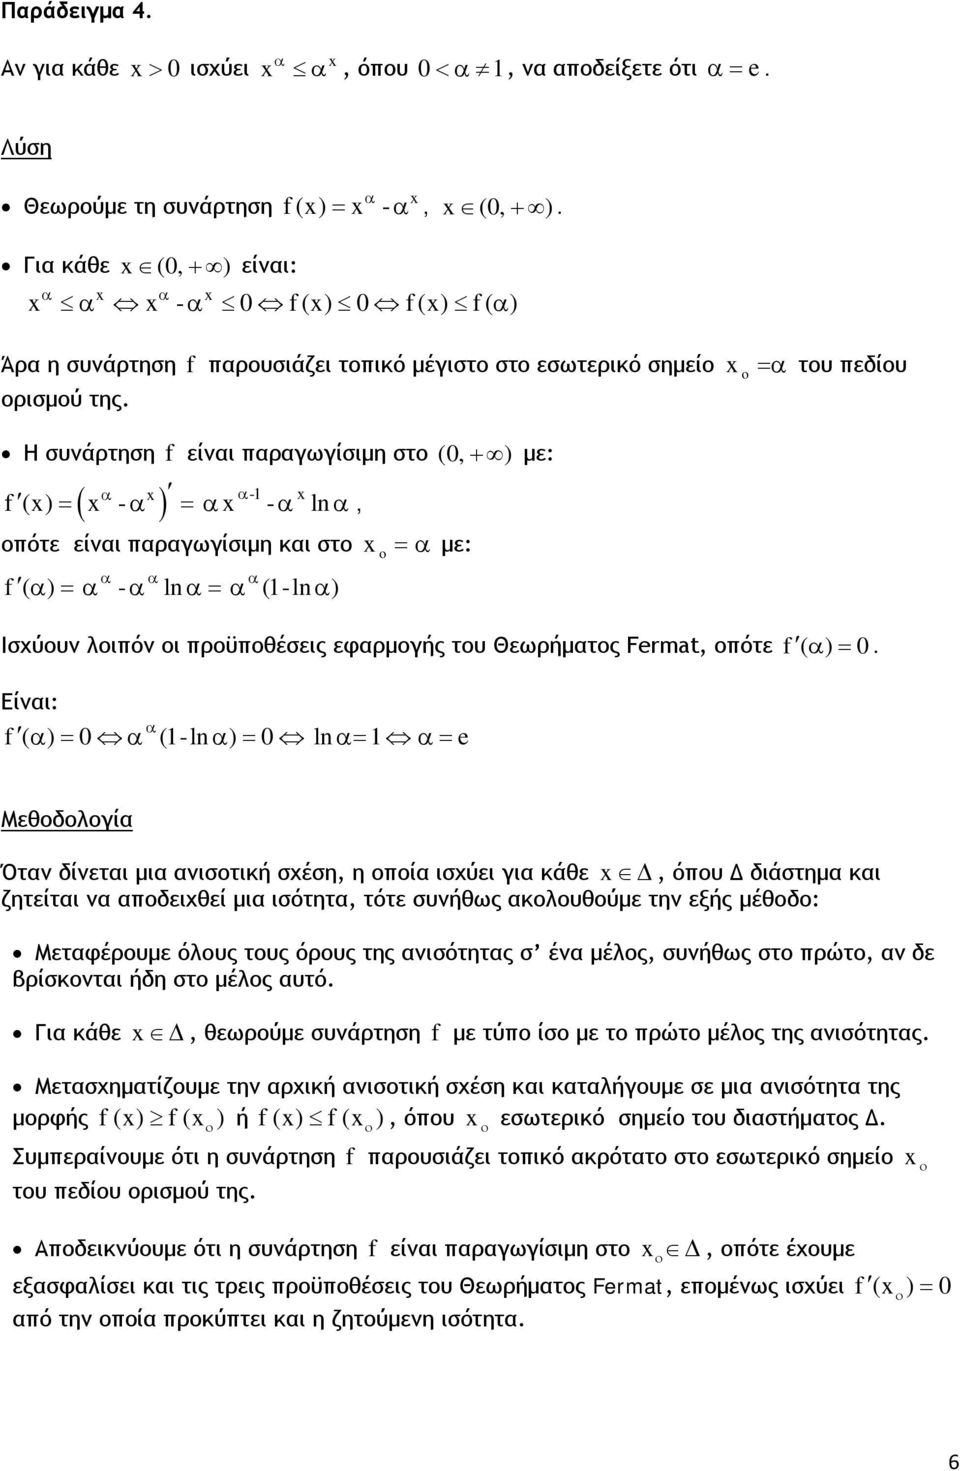 =α του πεδίου Η συνάρτηση f είναι παραγωγίσιμη στο (, + ) με: α α- ( ) f () = - α = α - α ln α, οπότε είναι παραγωγίσιμη και στο α α α f ( α ) =α - α ln α=α (-ln α ) = α με: Ισχύουν λοιπόν οι